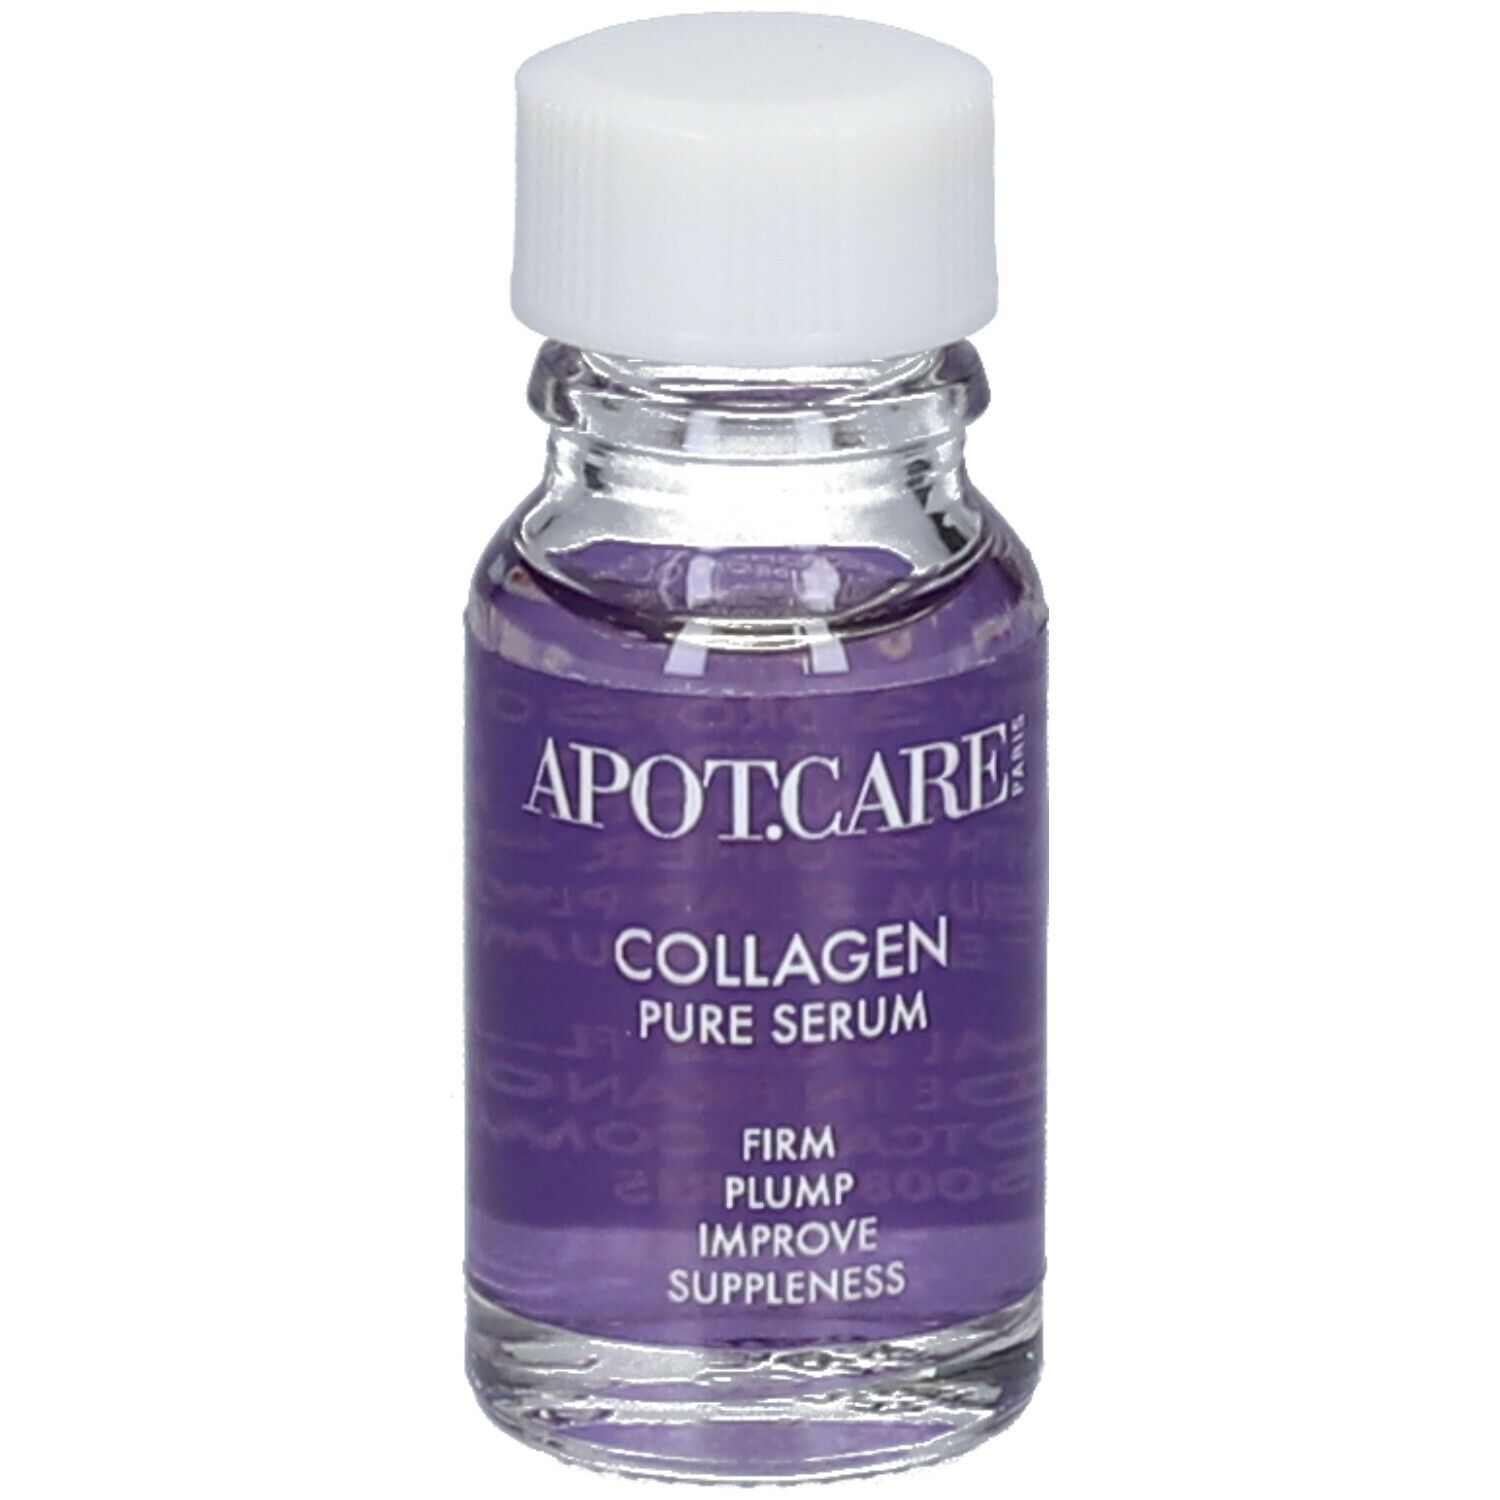 APOT.CARE Collagen Pure Serum